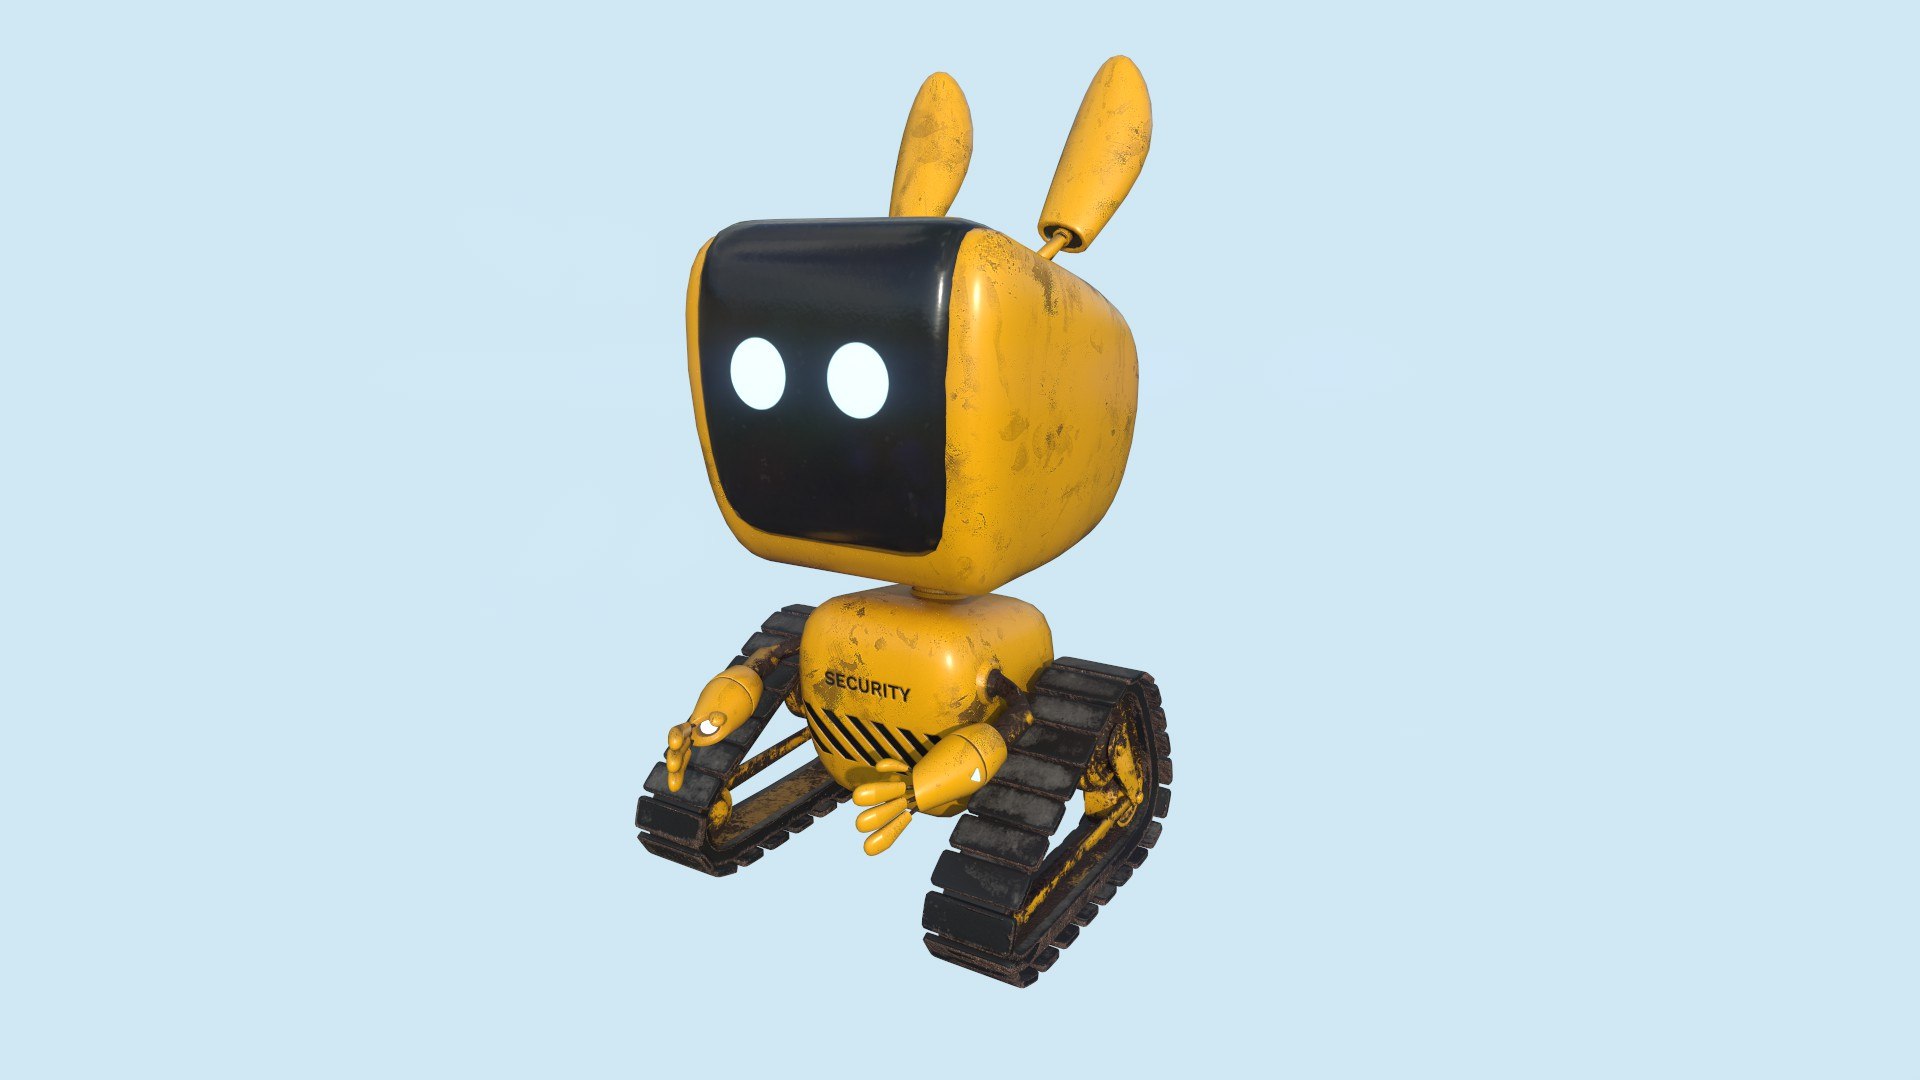 cute robot designs